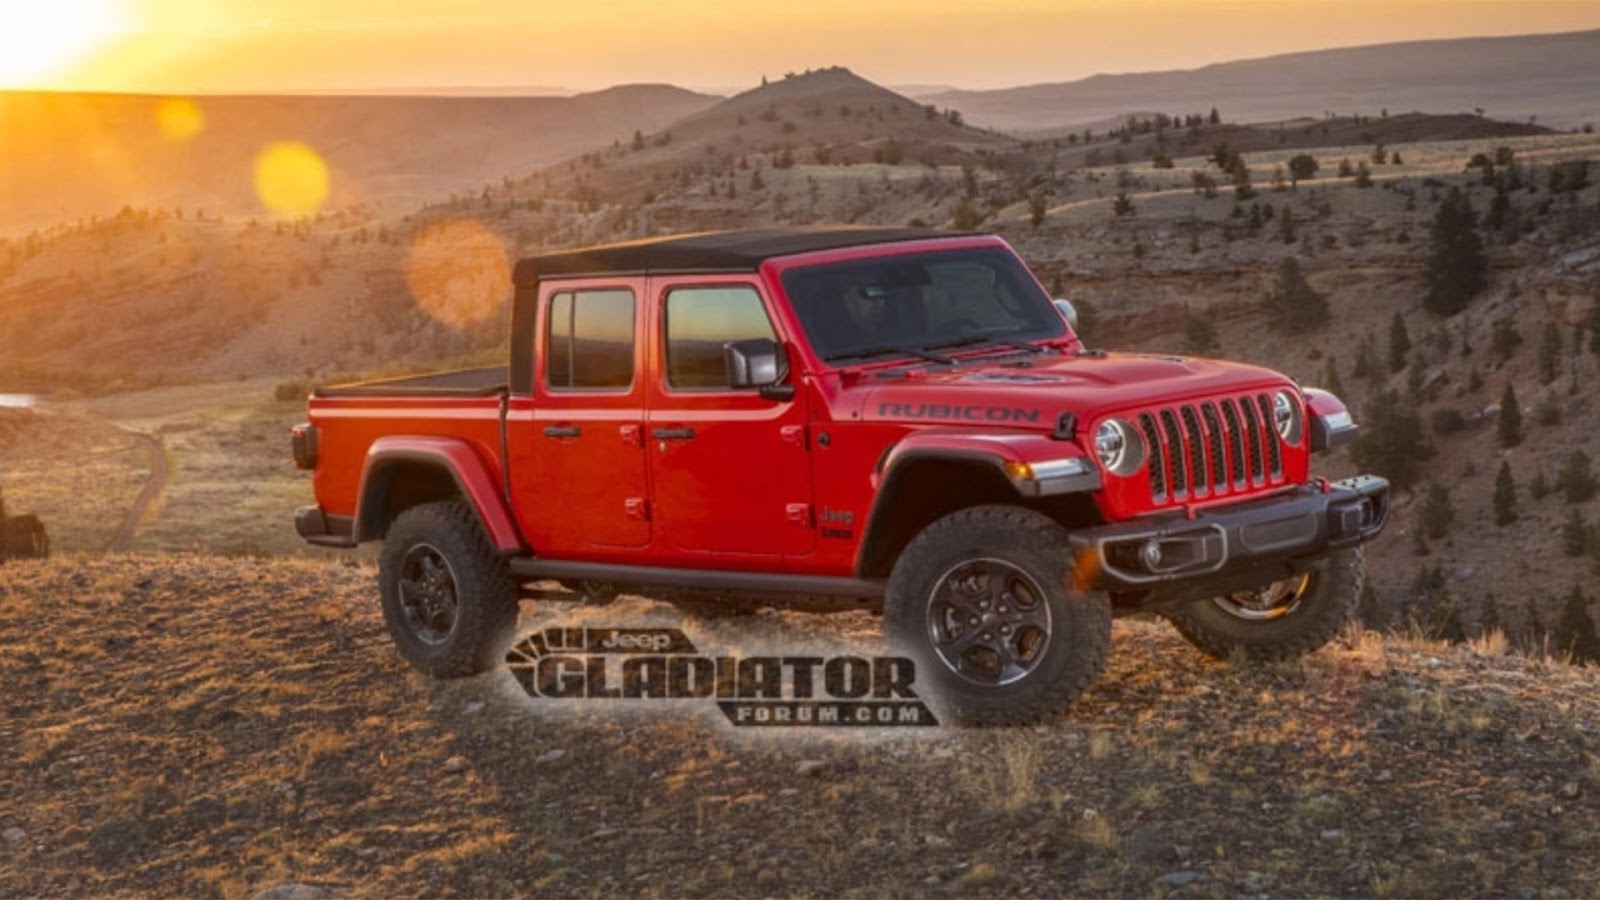 THE PUNCH SOUTH AMERICA: El nuevo Jeep Gladiator hará su debut en el